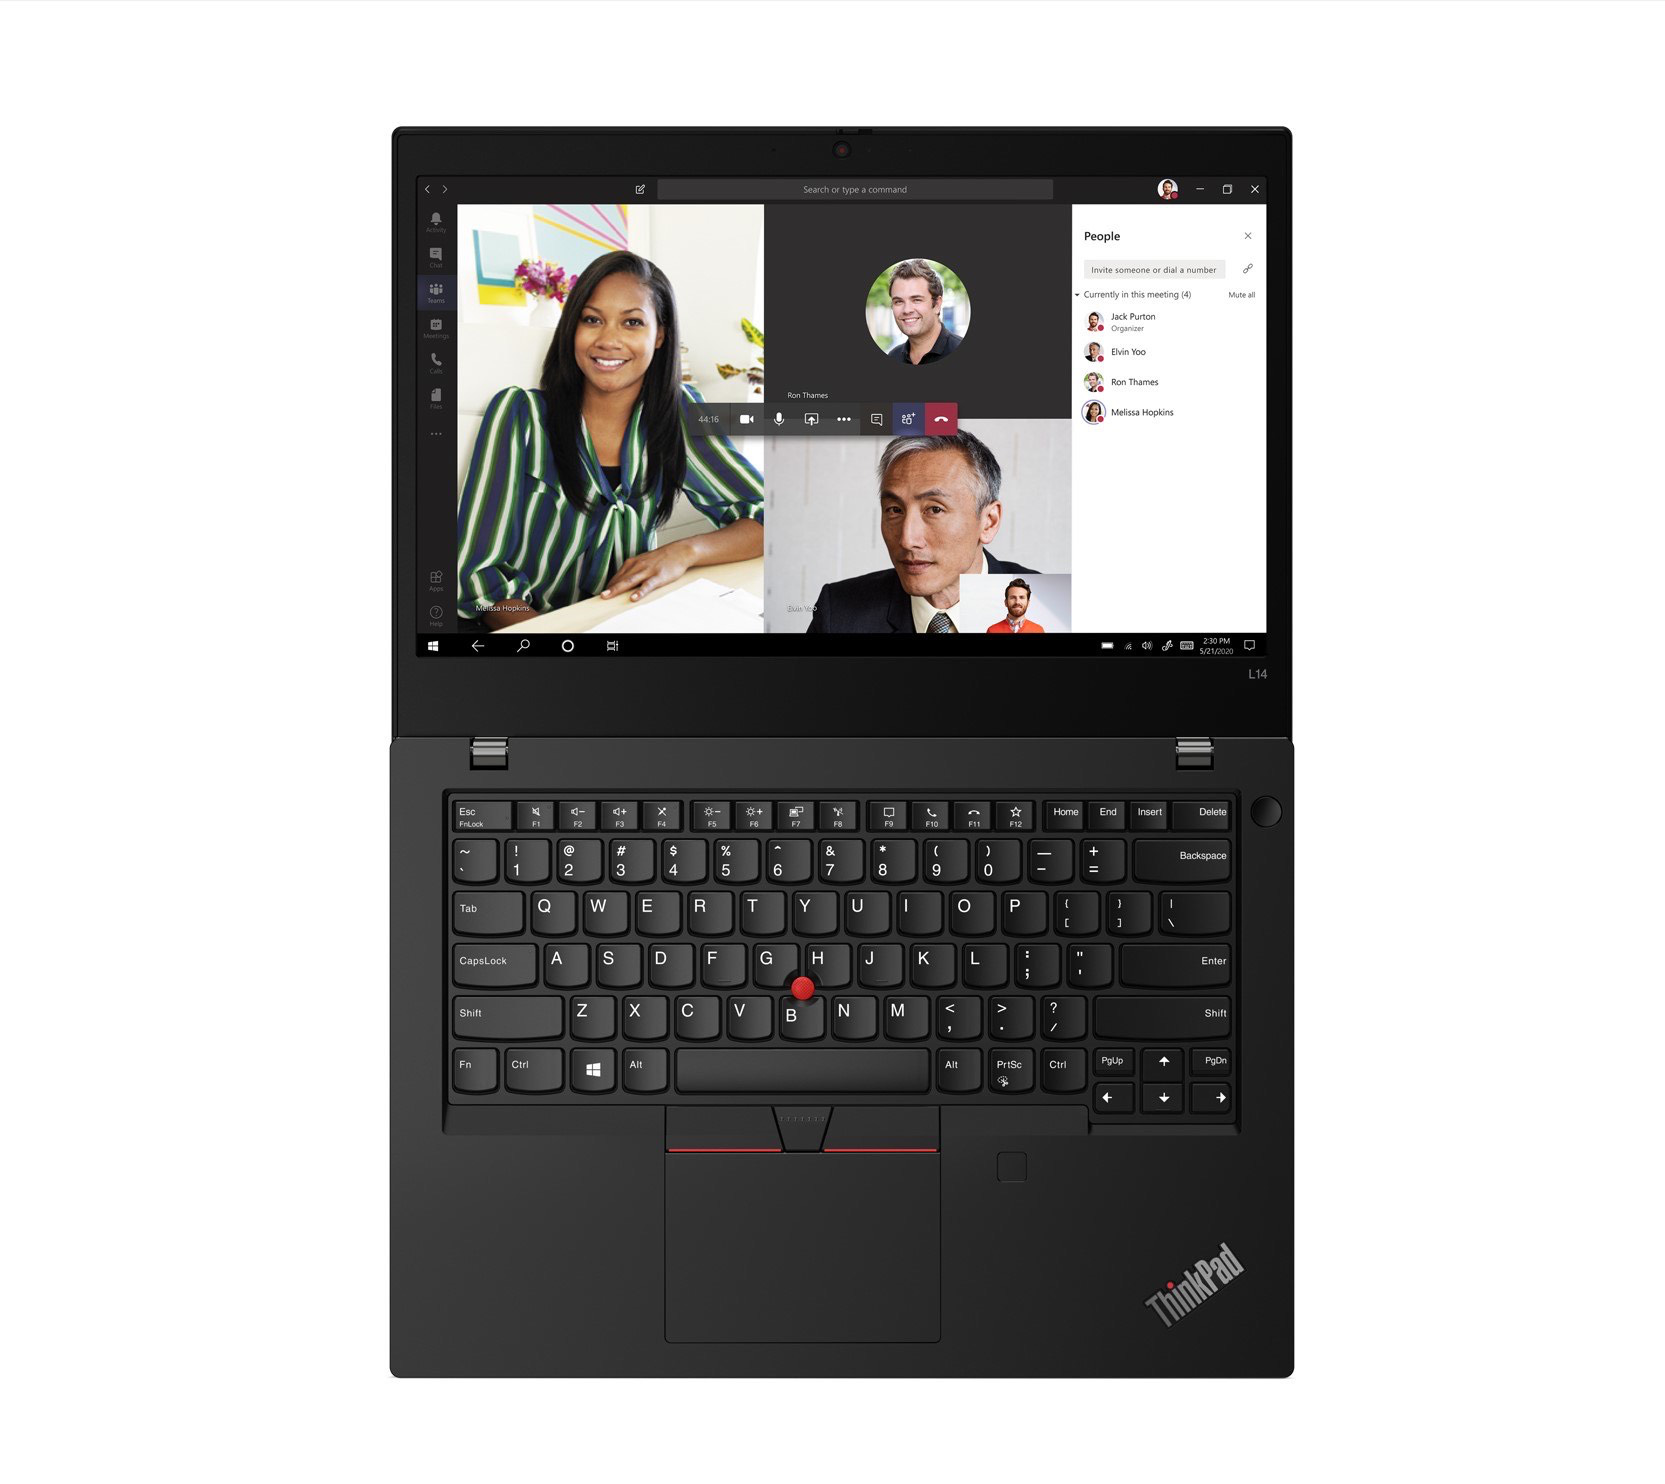 ThinkPad L Series Gen 2: Laptop hỗ trợ doanh nghiệp “chuyển đổi số” hiệu quả - Ảnh 1.